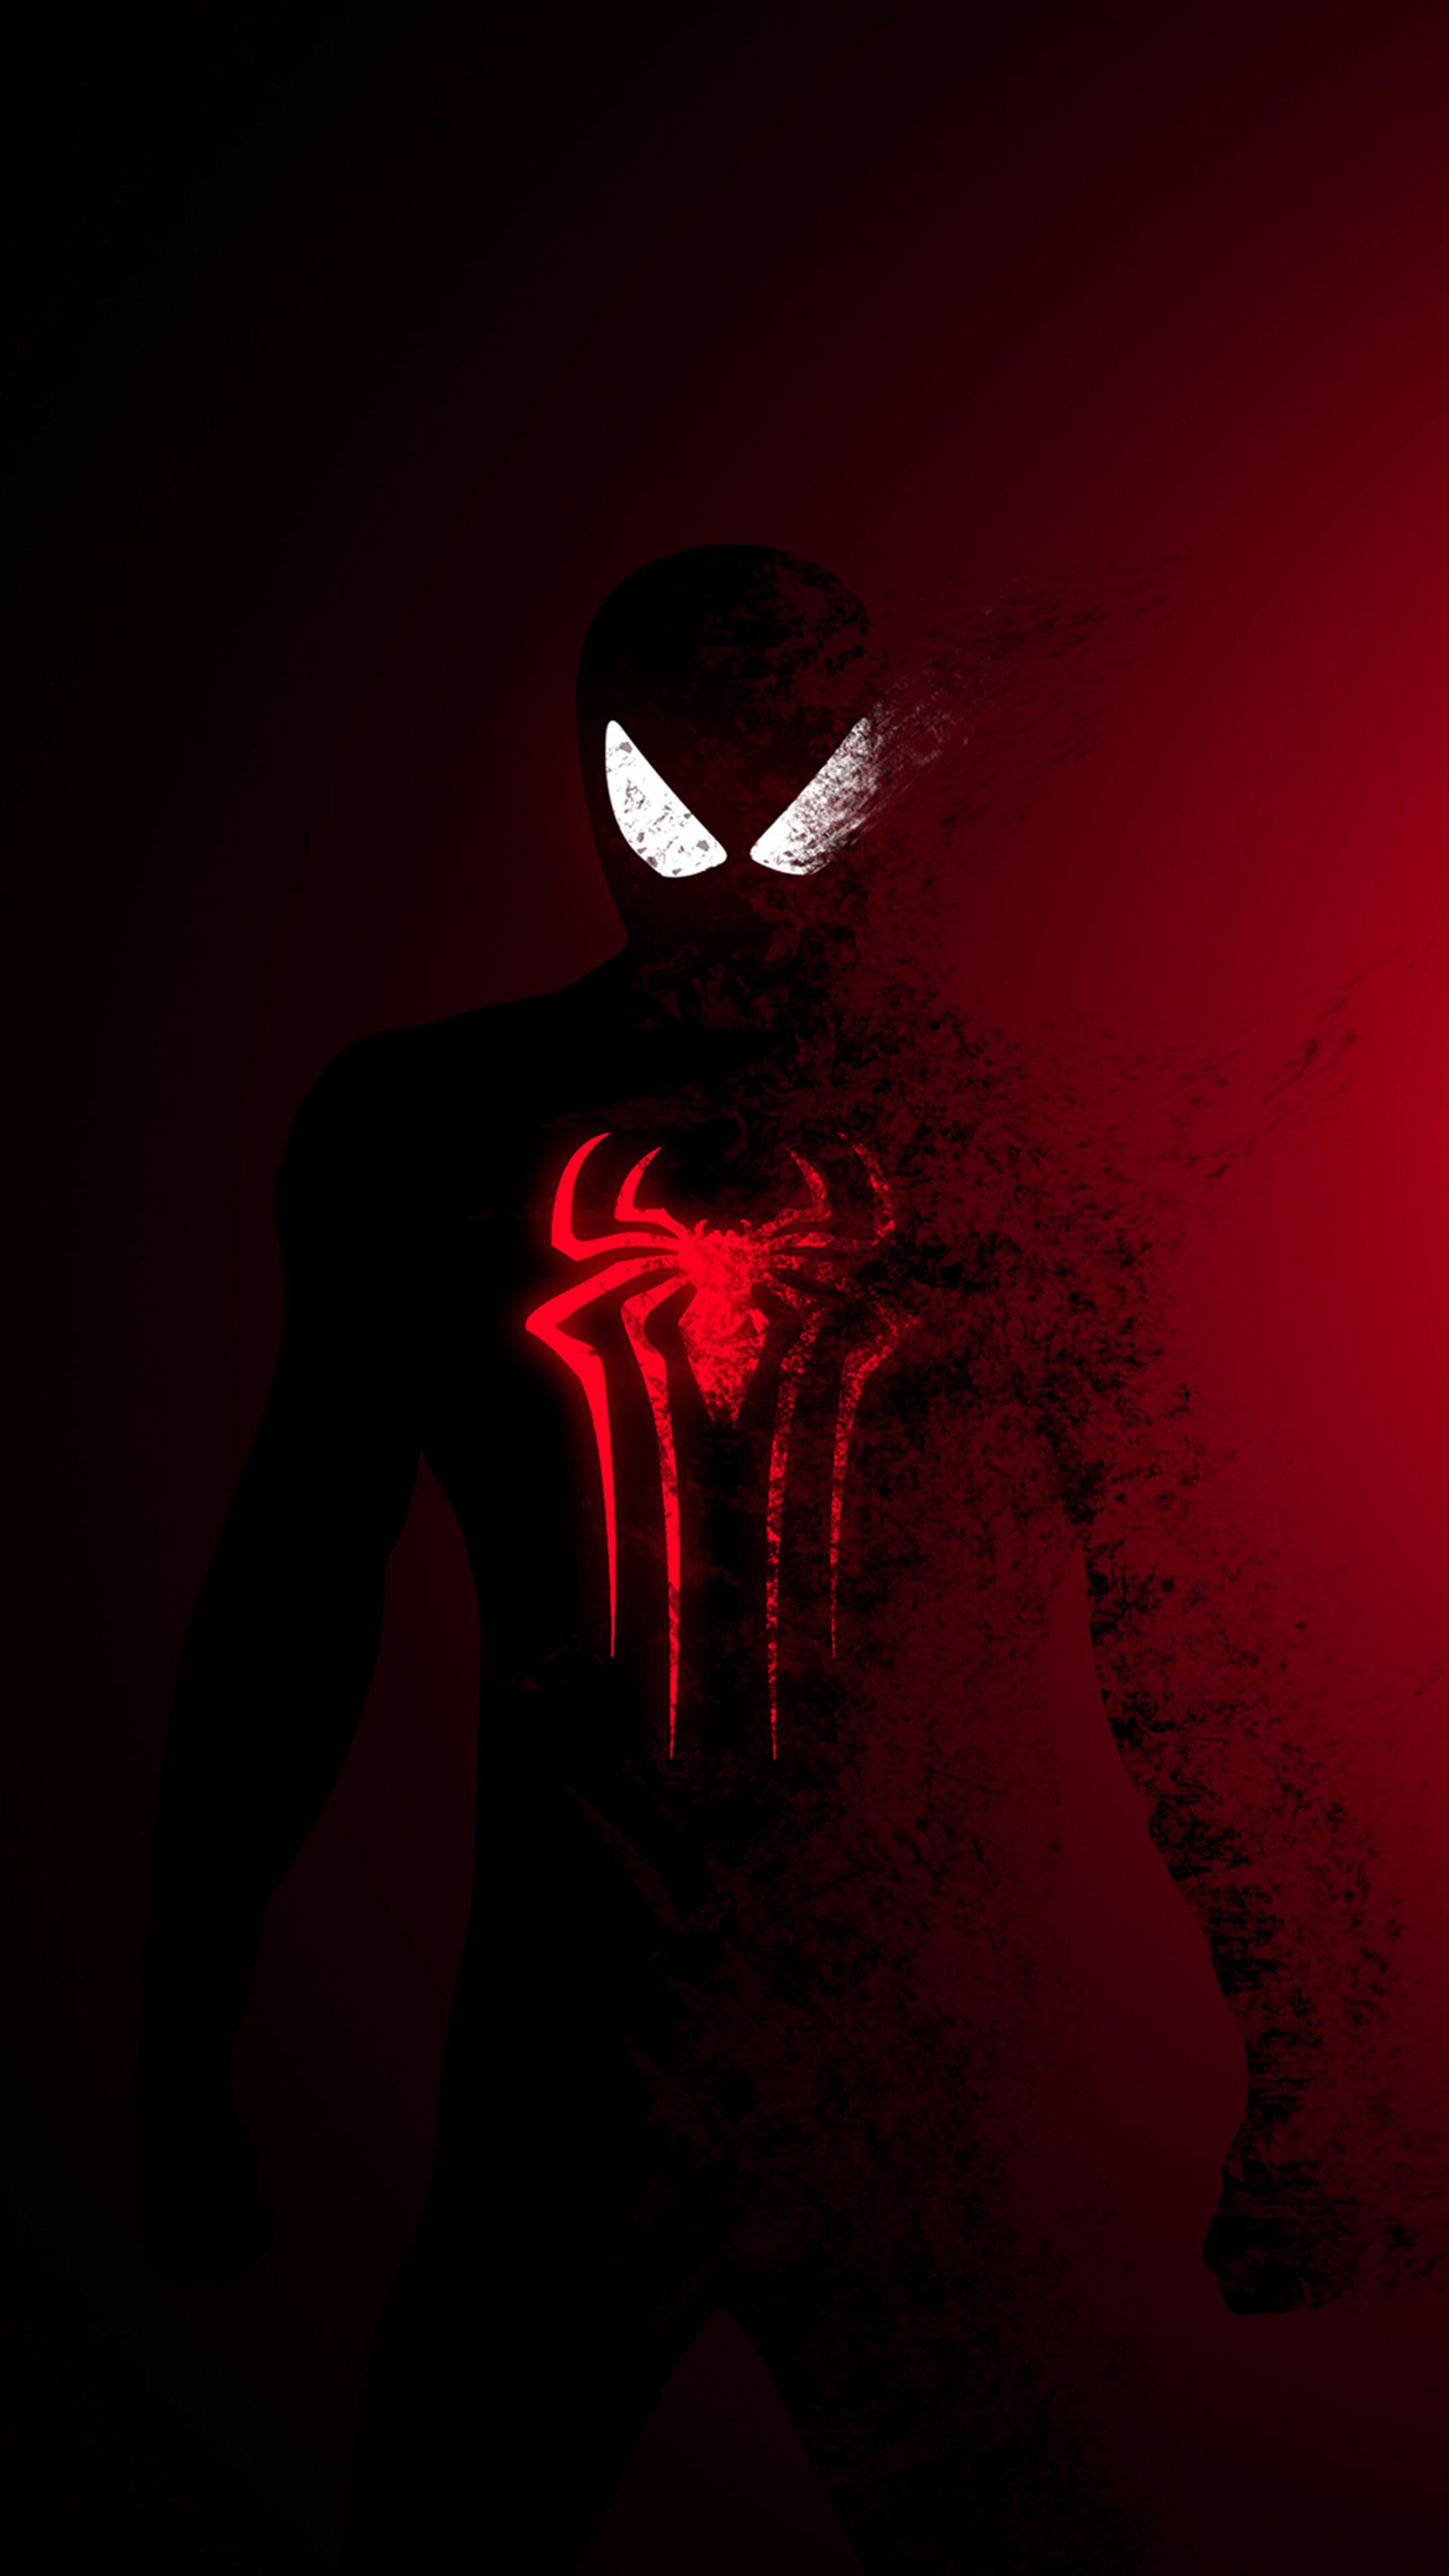 Spider Man 4k Wallpaper